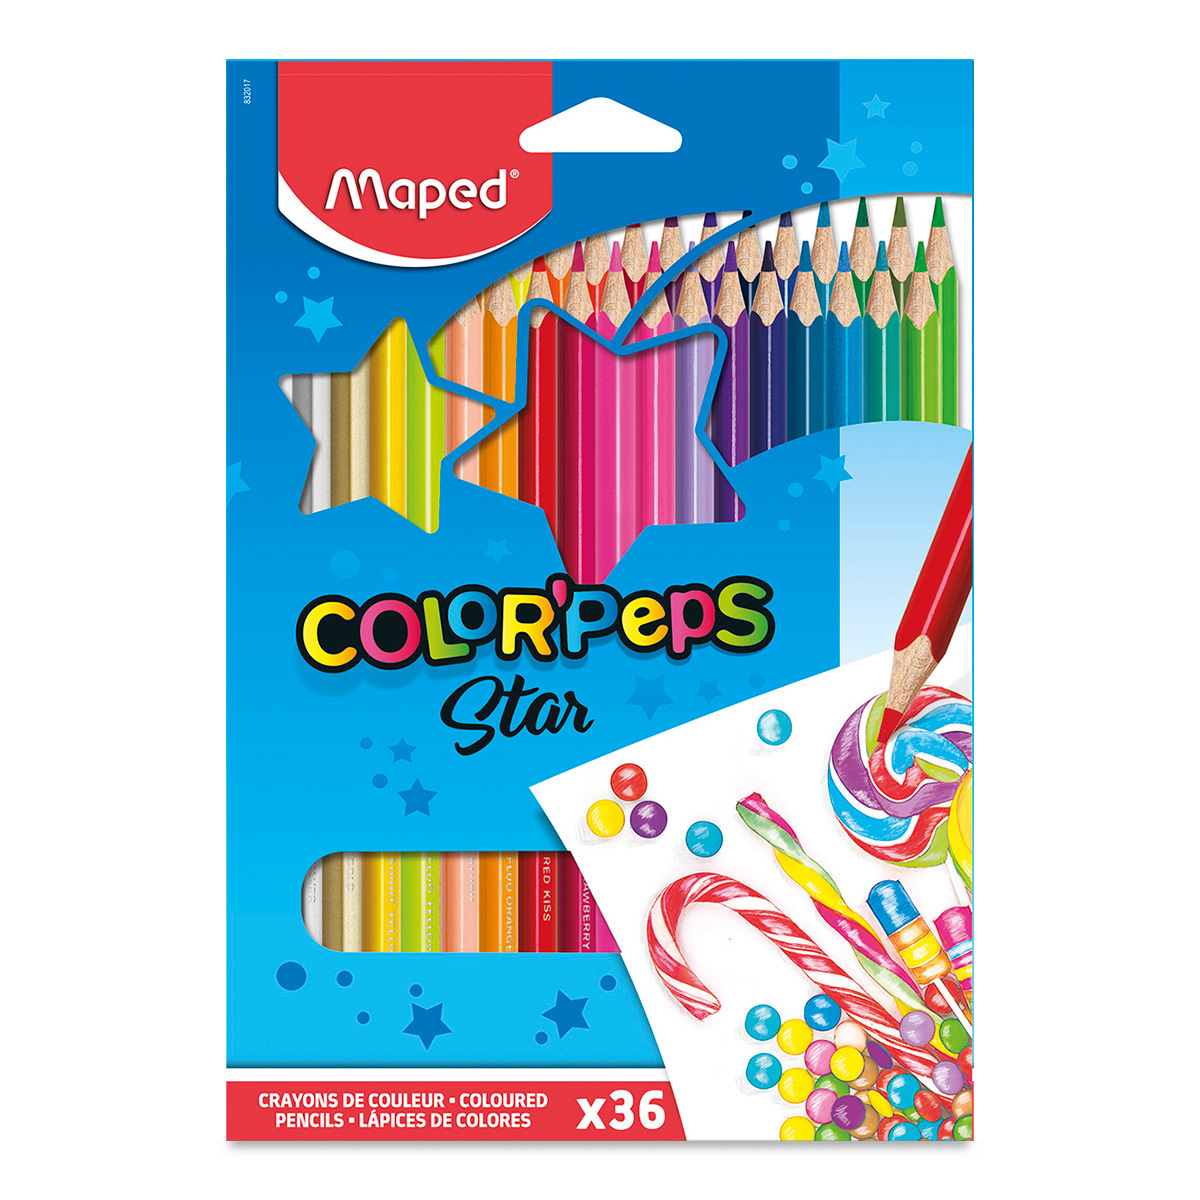 Lapices de color Maped con 36 piezas  Lá Caja con 36 lápices de color, triangular, mina suave y resistente                                                                                                                                                                                               piz colorpeps triangular                 - 3154148320173